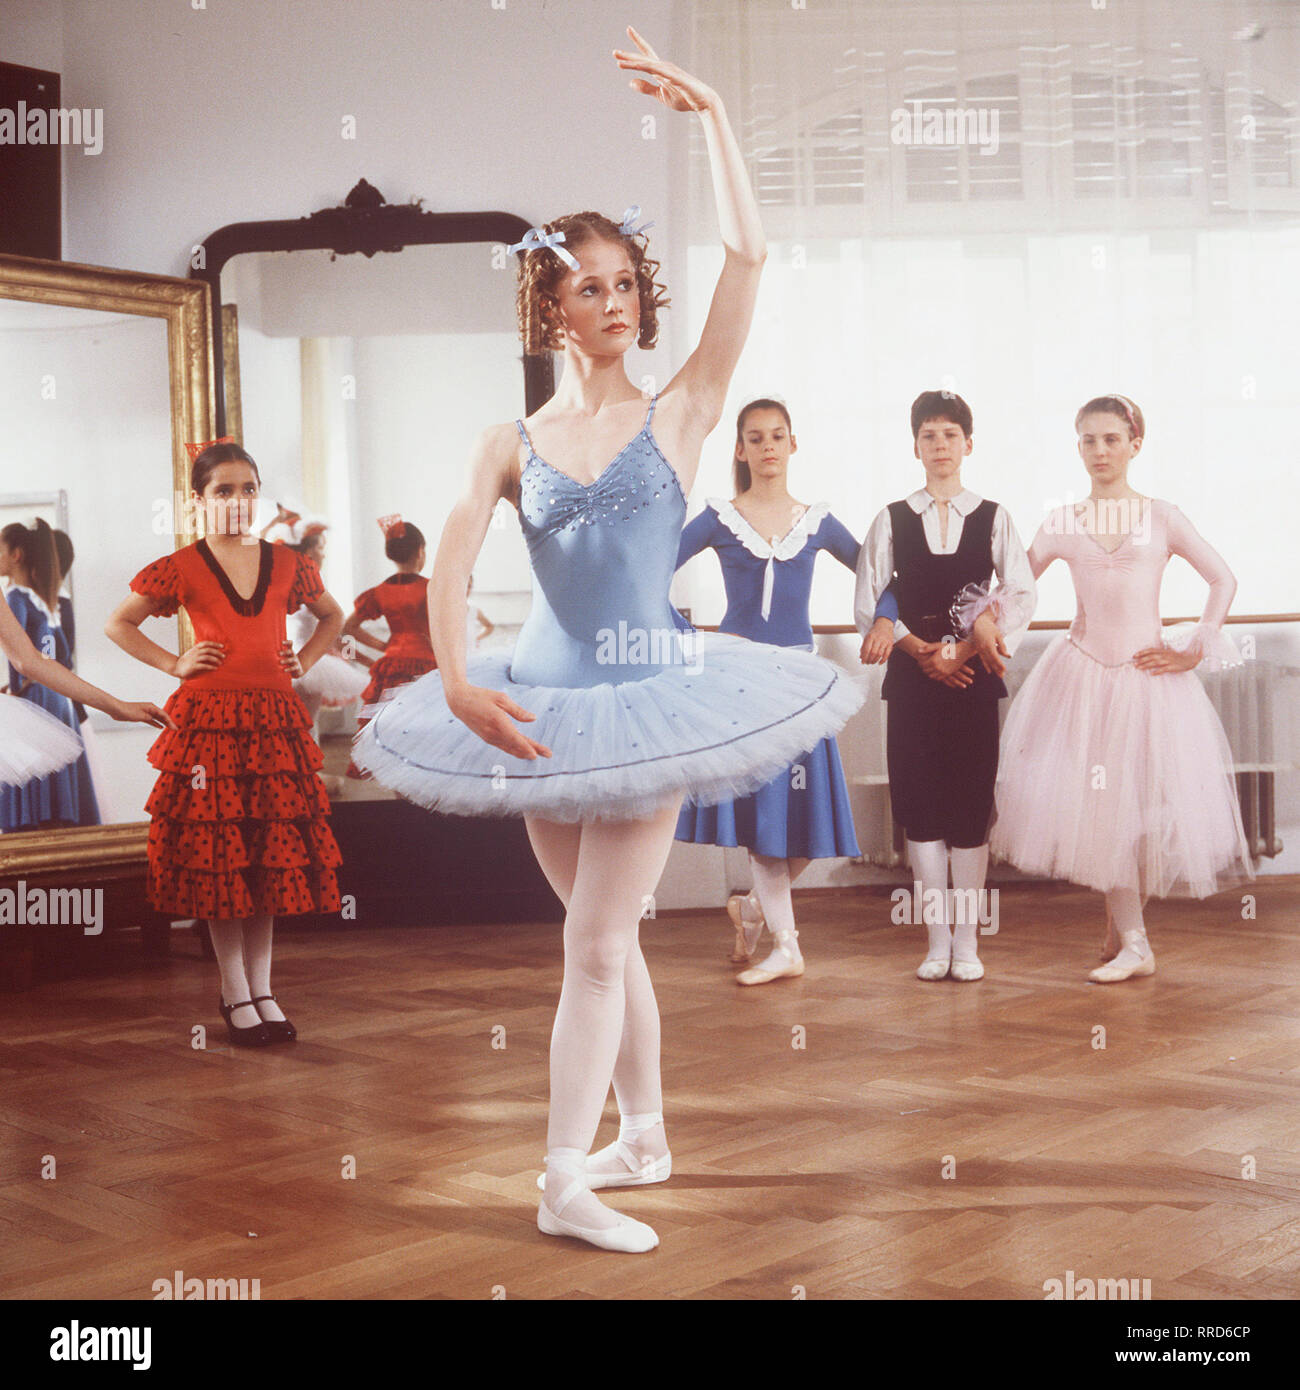 ANNA / TV-Serie von 1987 - Regie Frank Strecker / 1. Folge / Die Schülerin Anna (SILVIA SEIDEL, in einer Szene) hat Eine große Begabung zur Ballett-Tänzerin. Doch dann wird sie bei einem Unfall verletzt così, dass sie Arme und Beine nicht mehr bewegen kann. / 28929 / , 09DFAAnna1 / Überschrift: ANNA Foto Stock